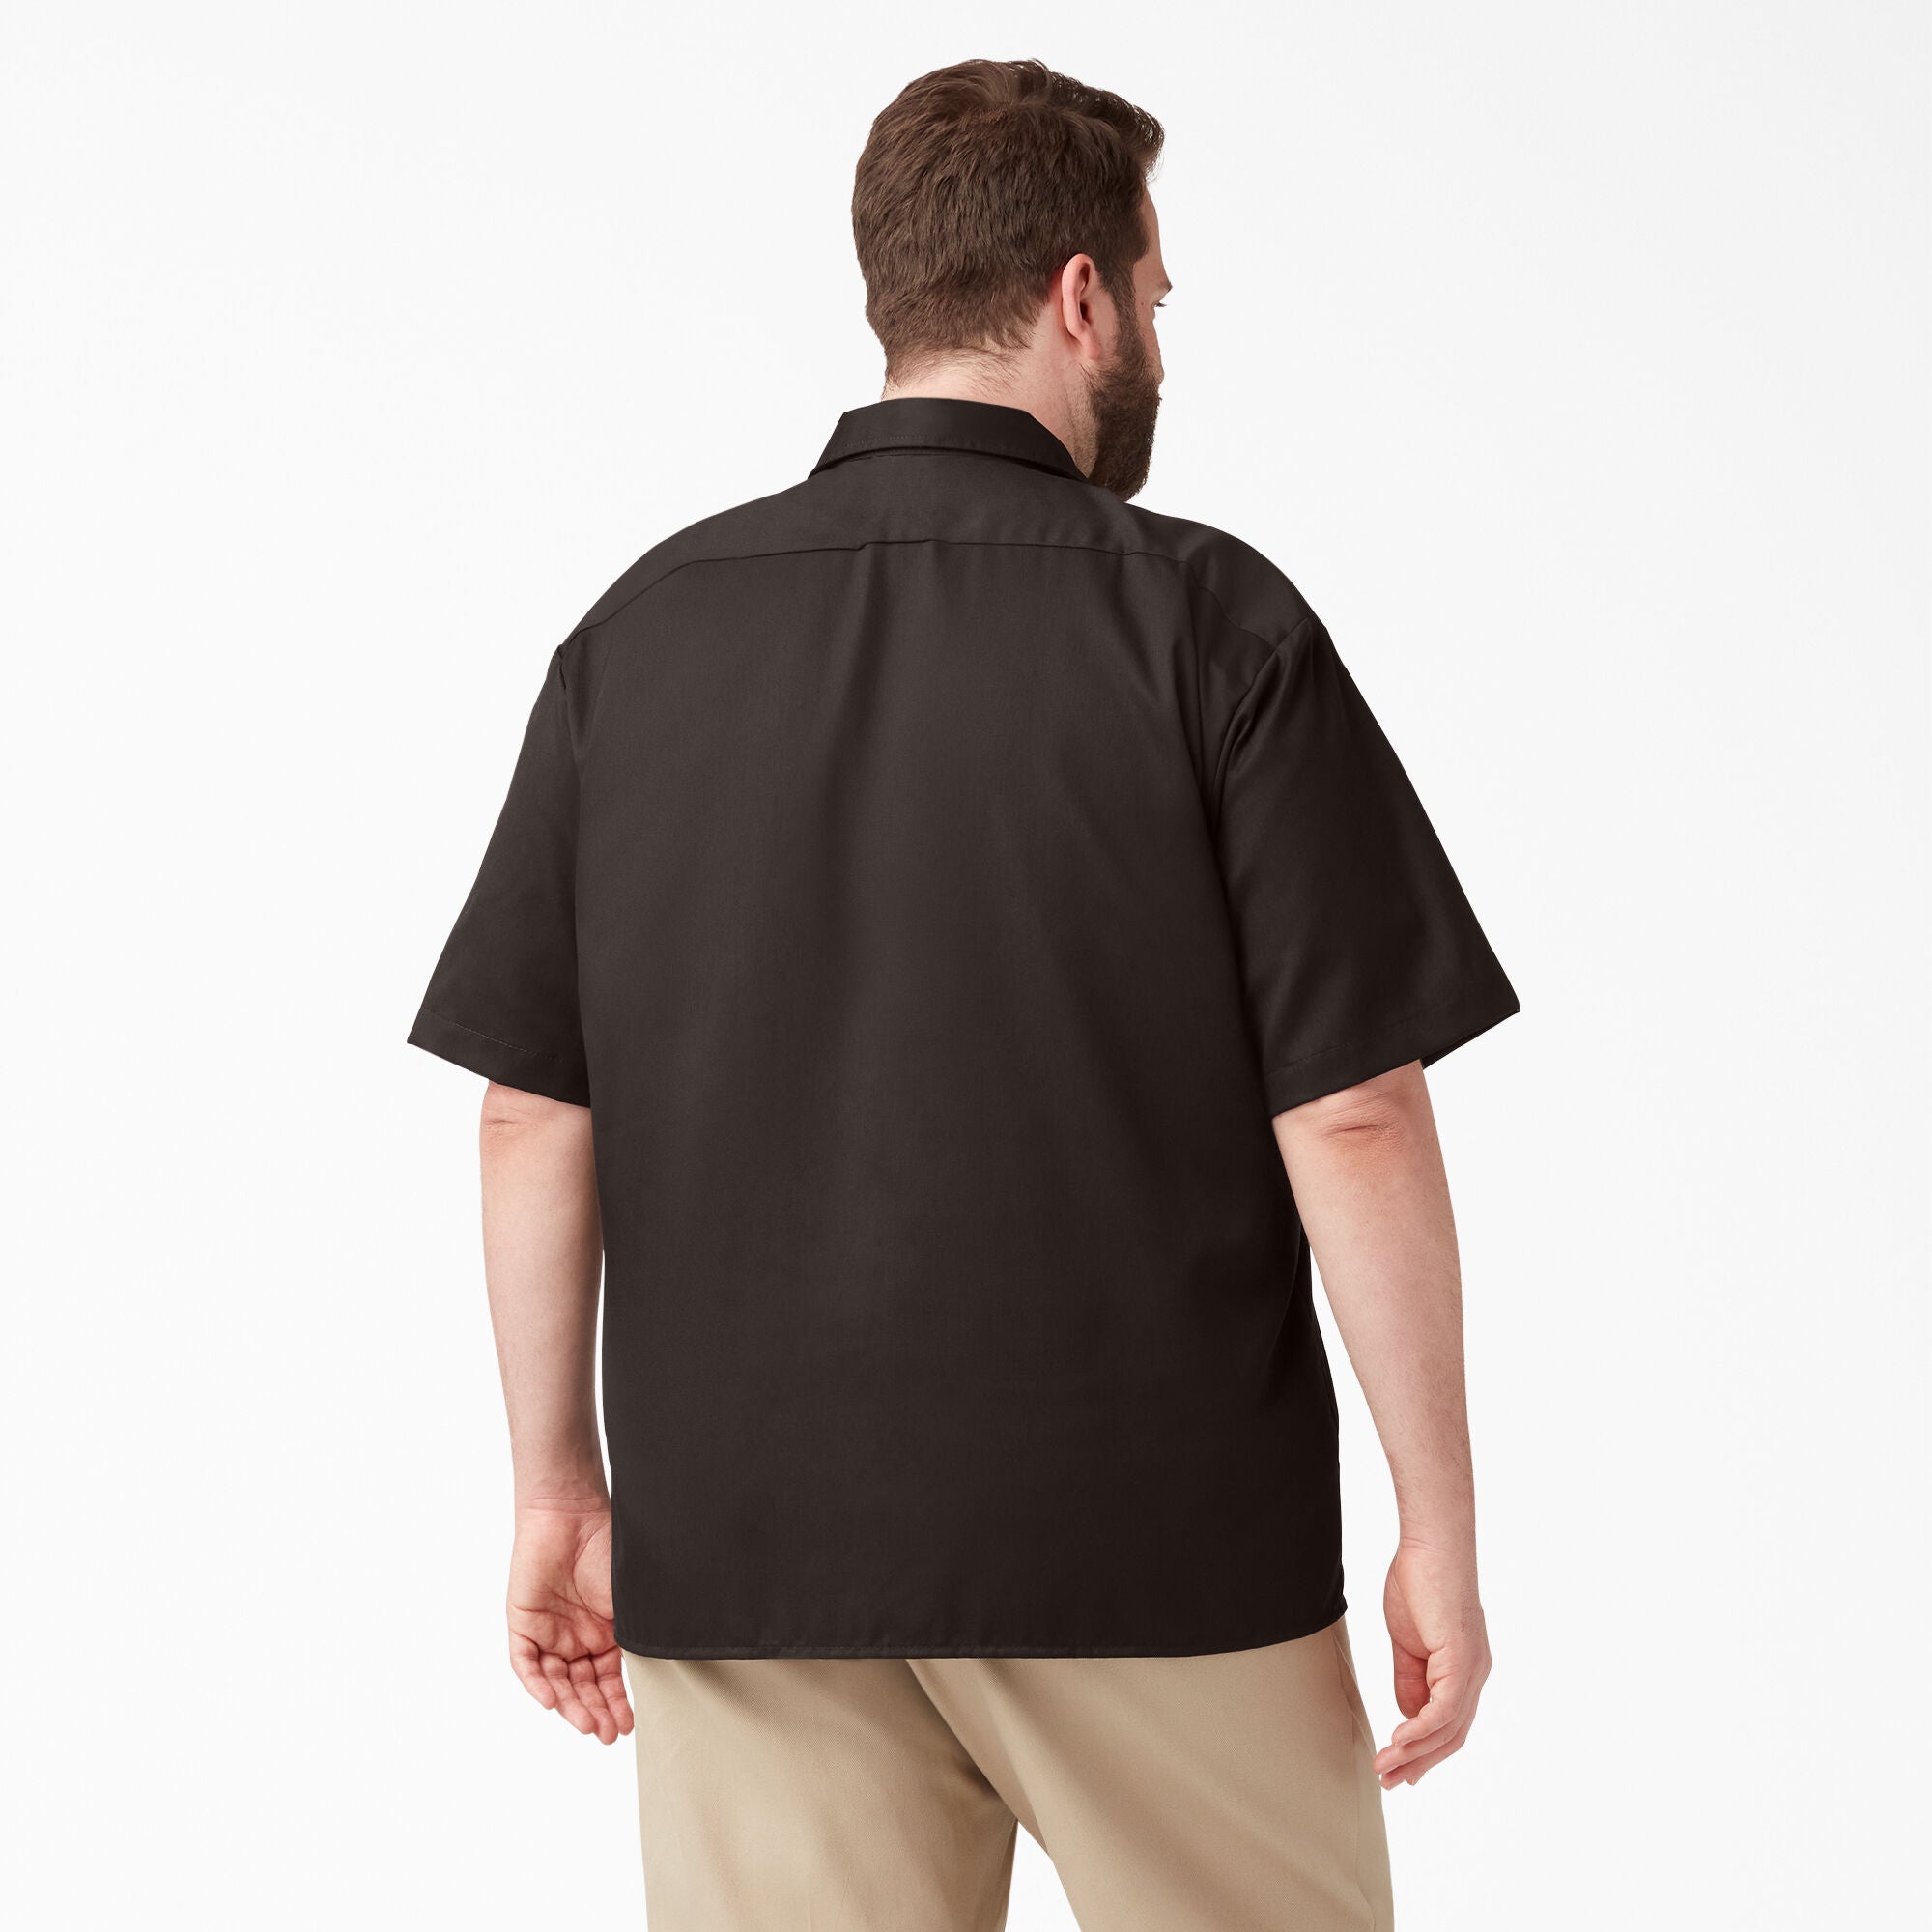 Dickies Short Sleeve Work Shirt, Dark Brown - The Blue Ox 916